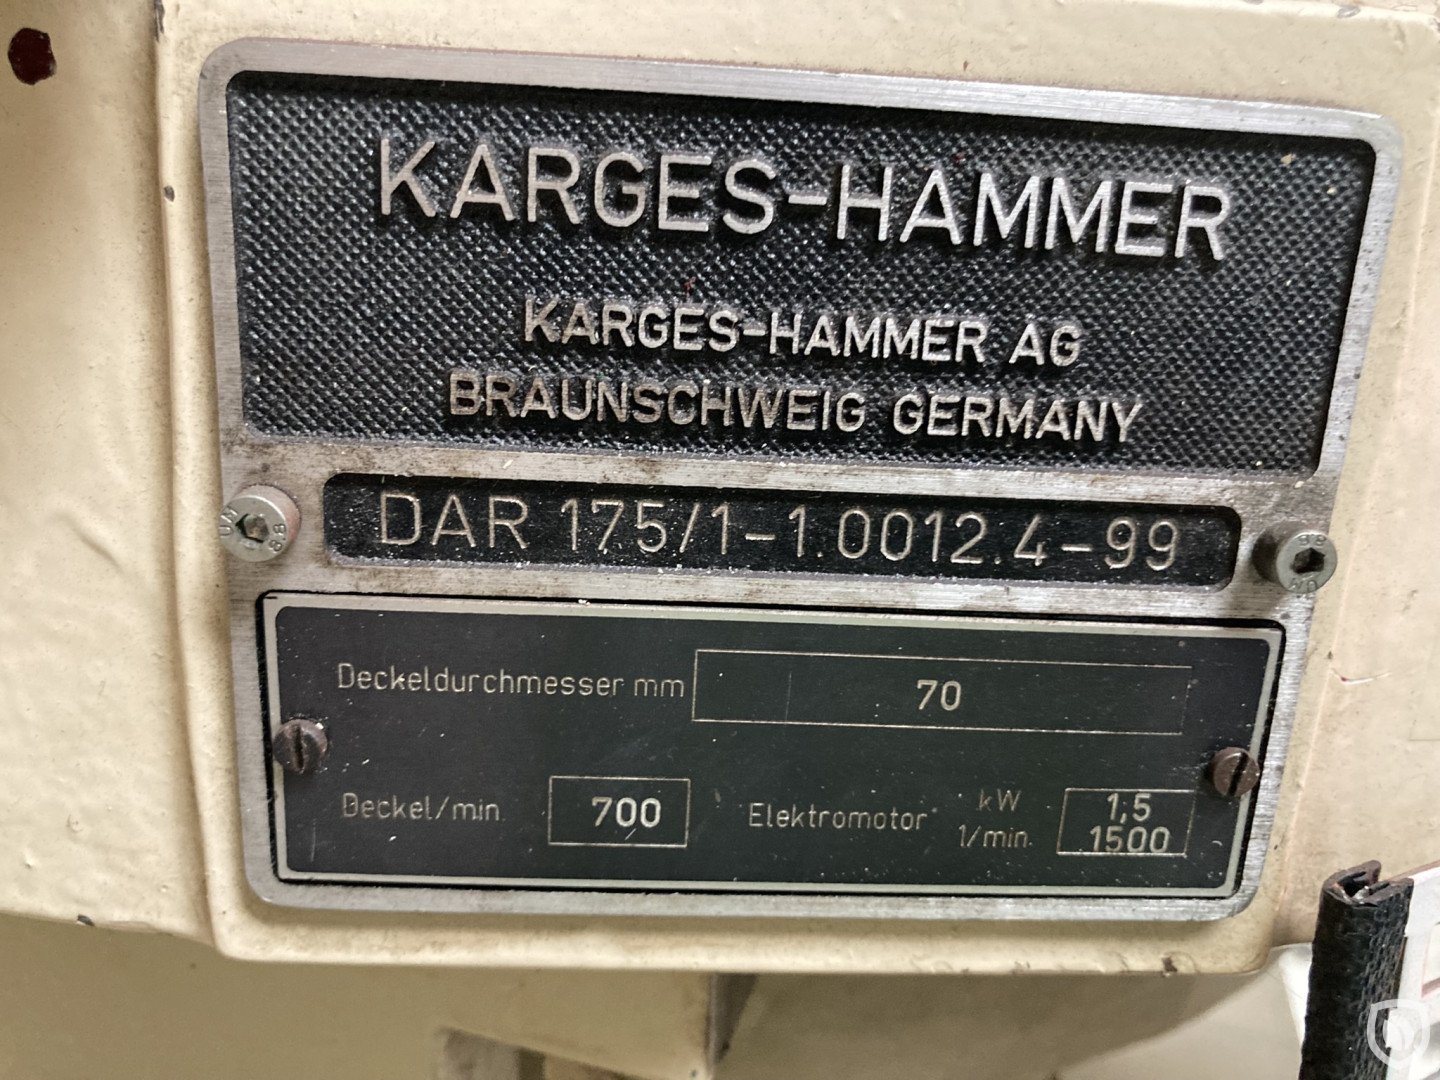 Karges Hammer DAR 175/1